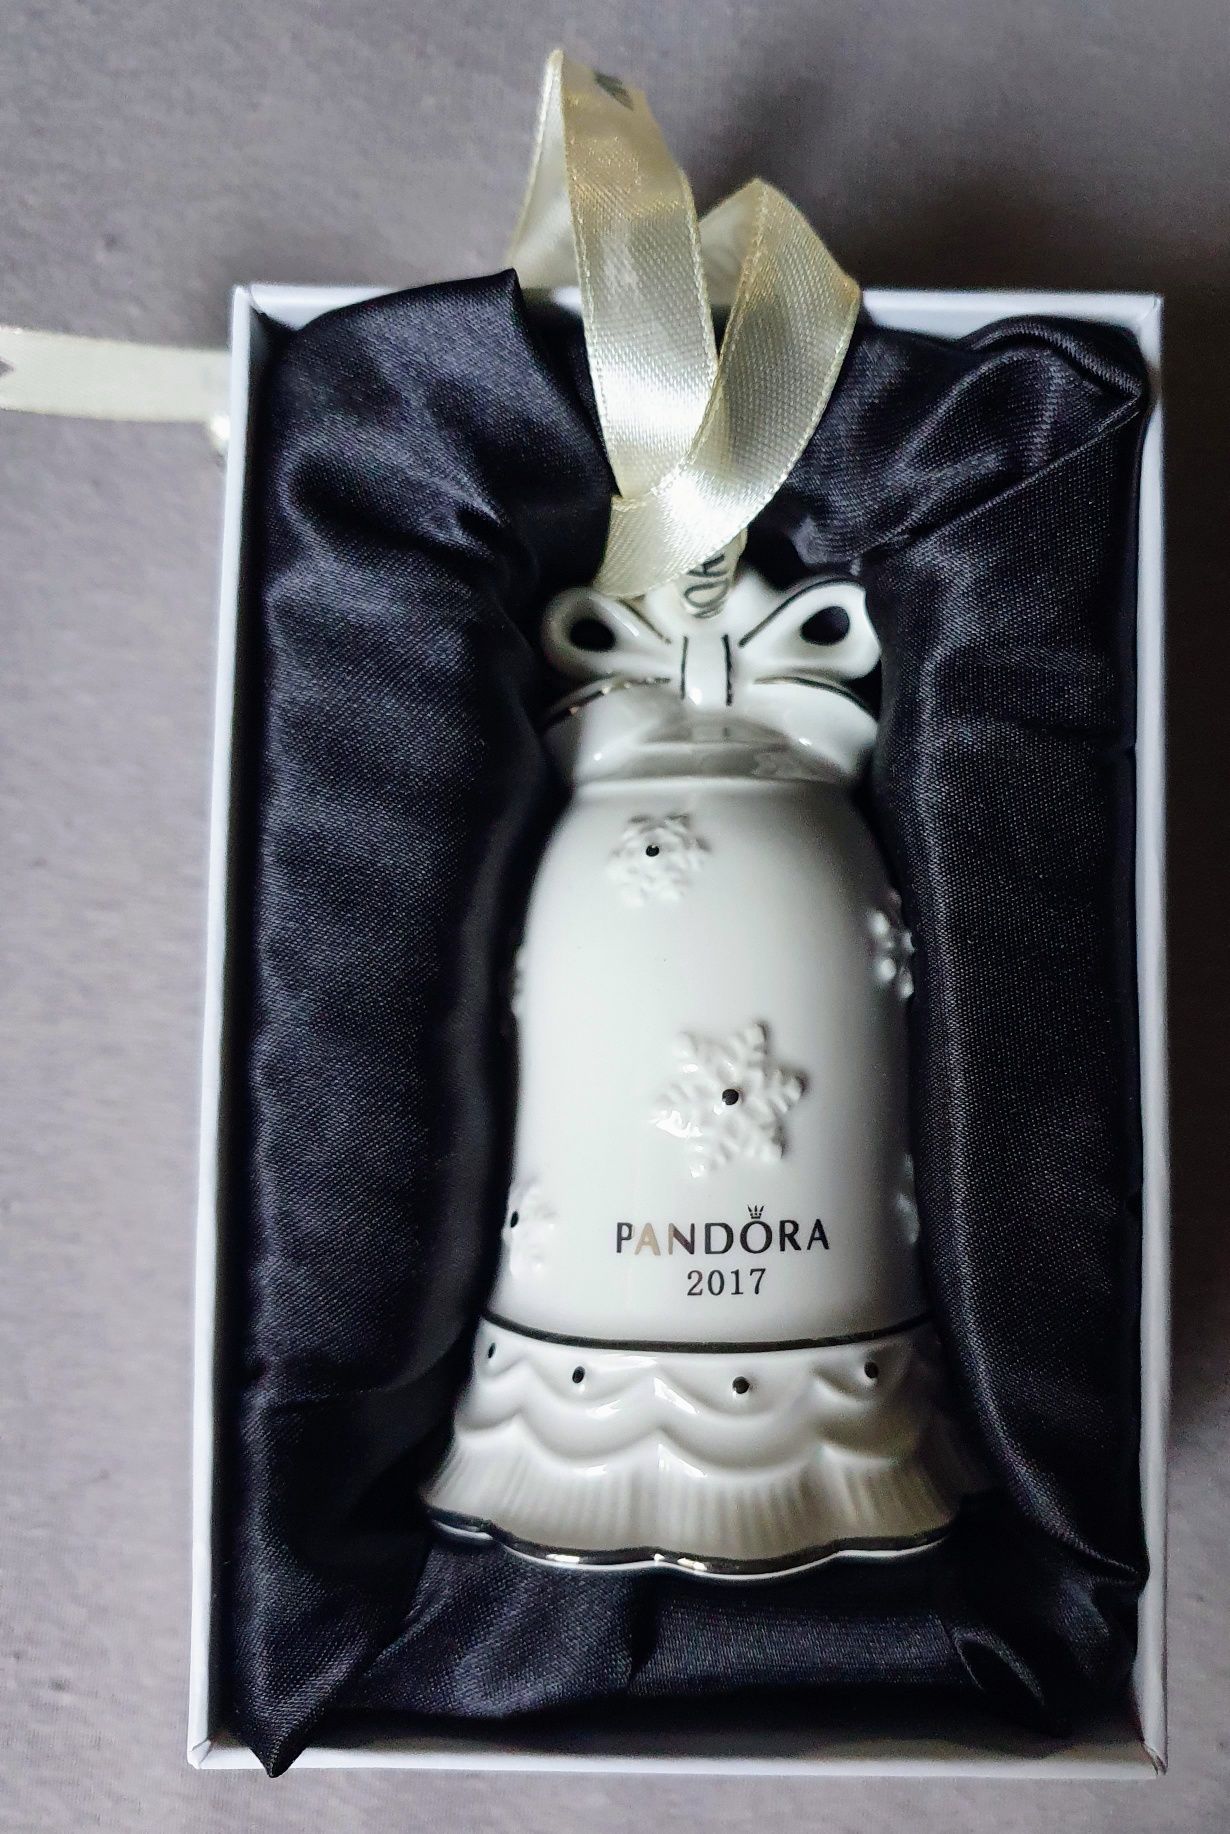 PANDORA Oryginalny Dzwoneczek dzwonek z porcelany + torba prezentowa